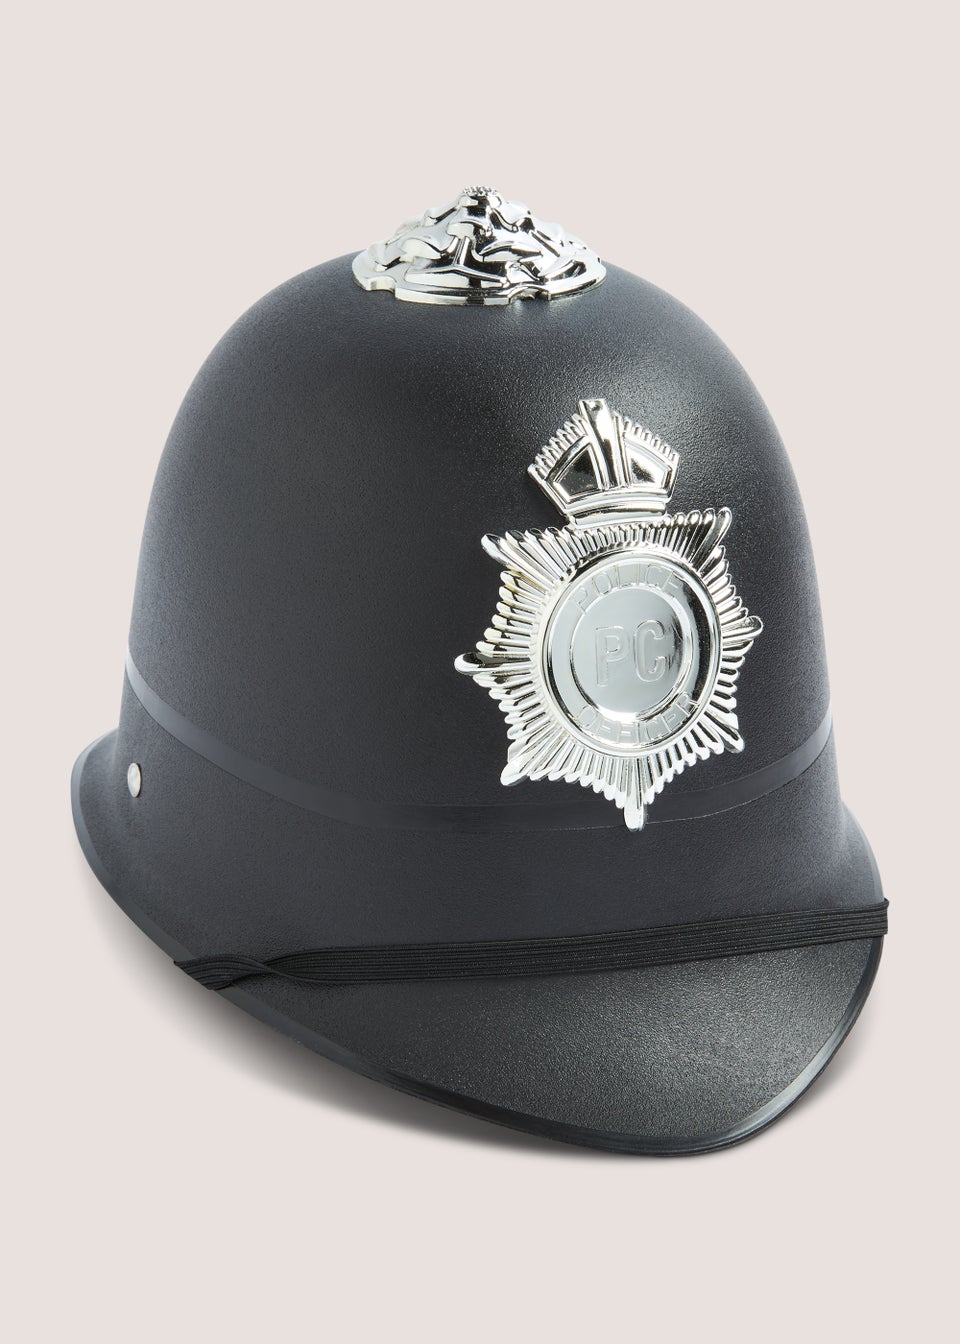 Kids Police Hat (19cm x 27cm x 15cm)